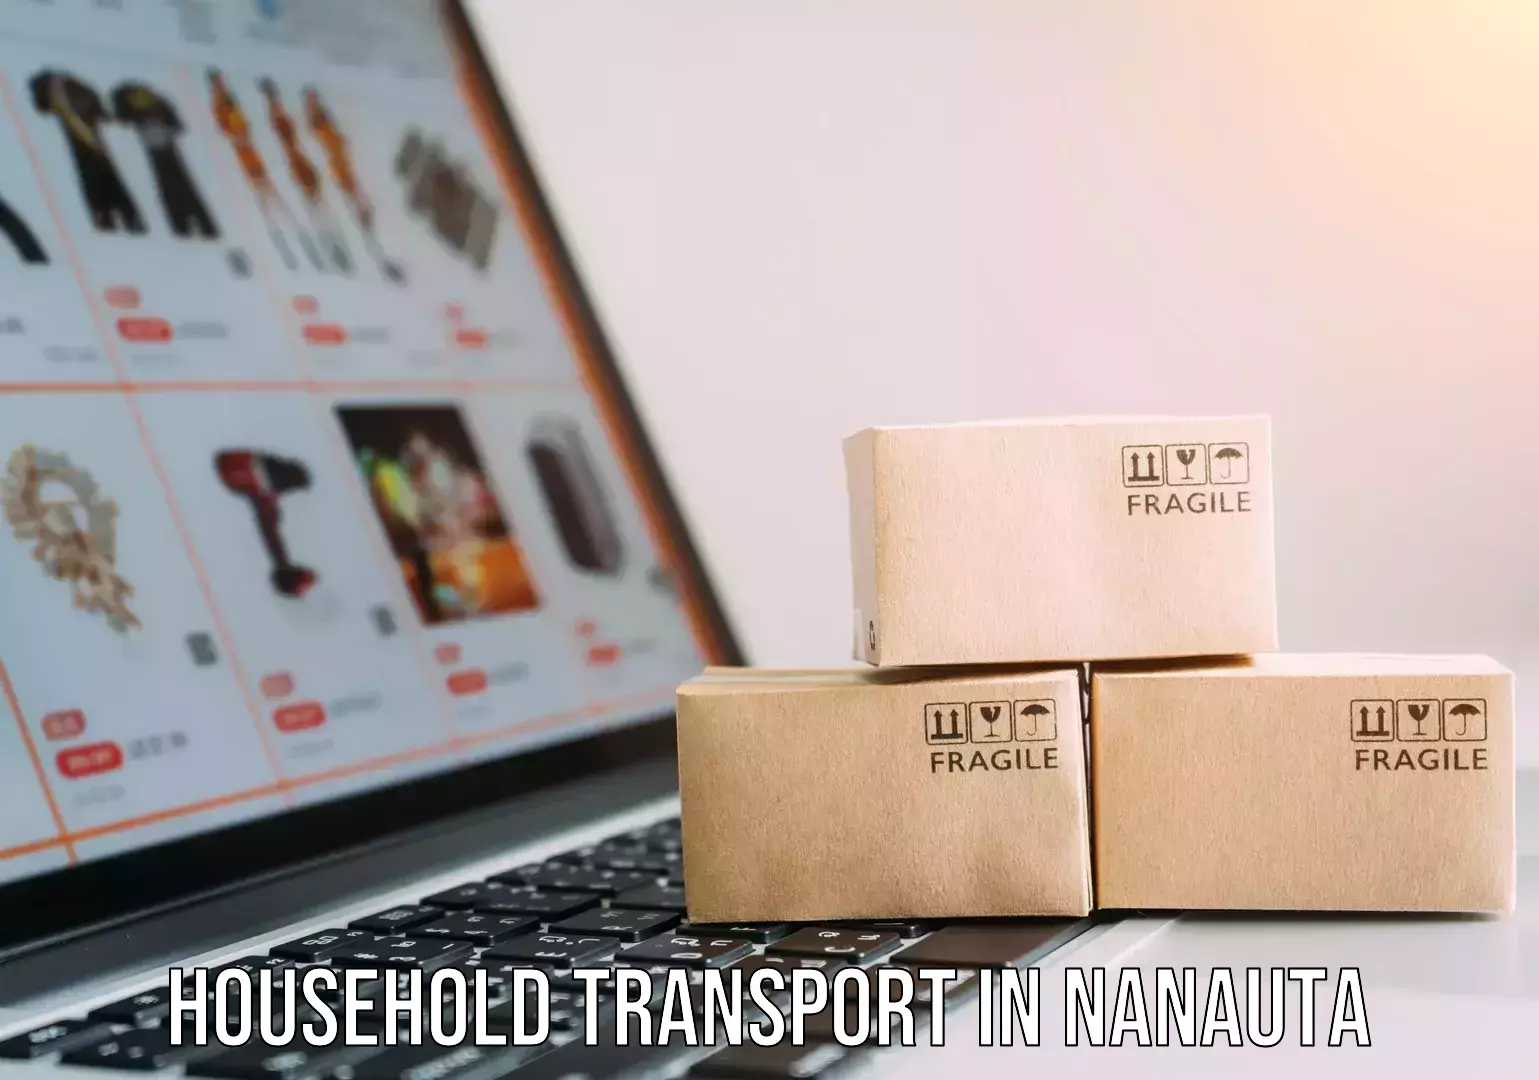 Furniture logistics in Nanauta